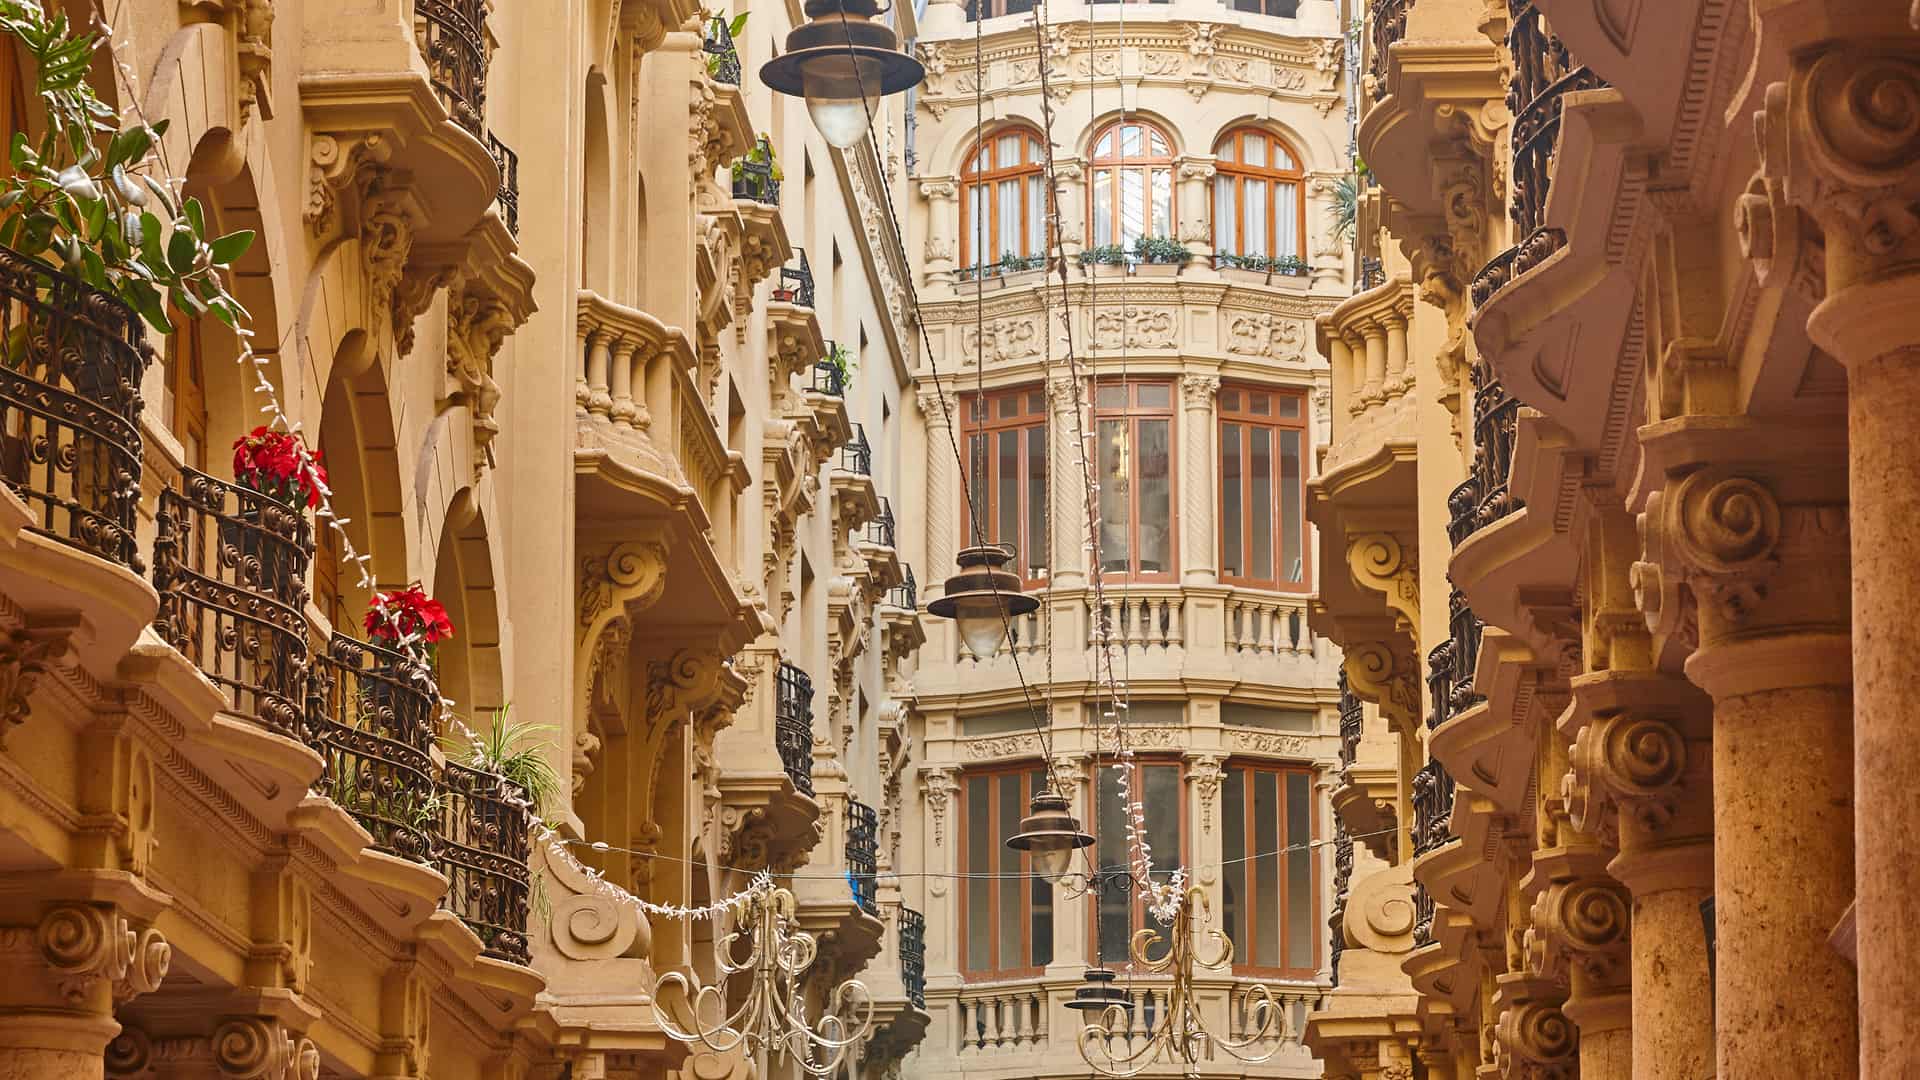 Edificios antiguos clásicos fachadas pasadizo en Albacete donde esta disponible el operador telefónico finetwork